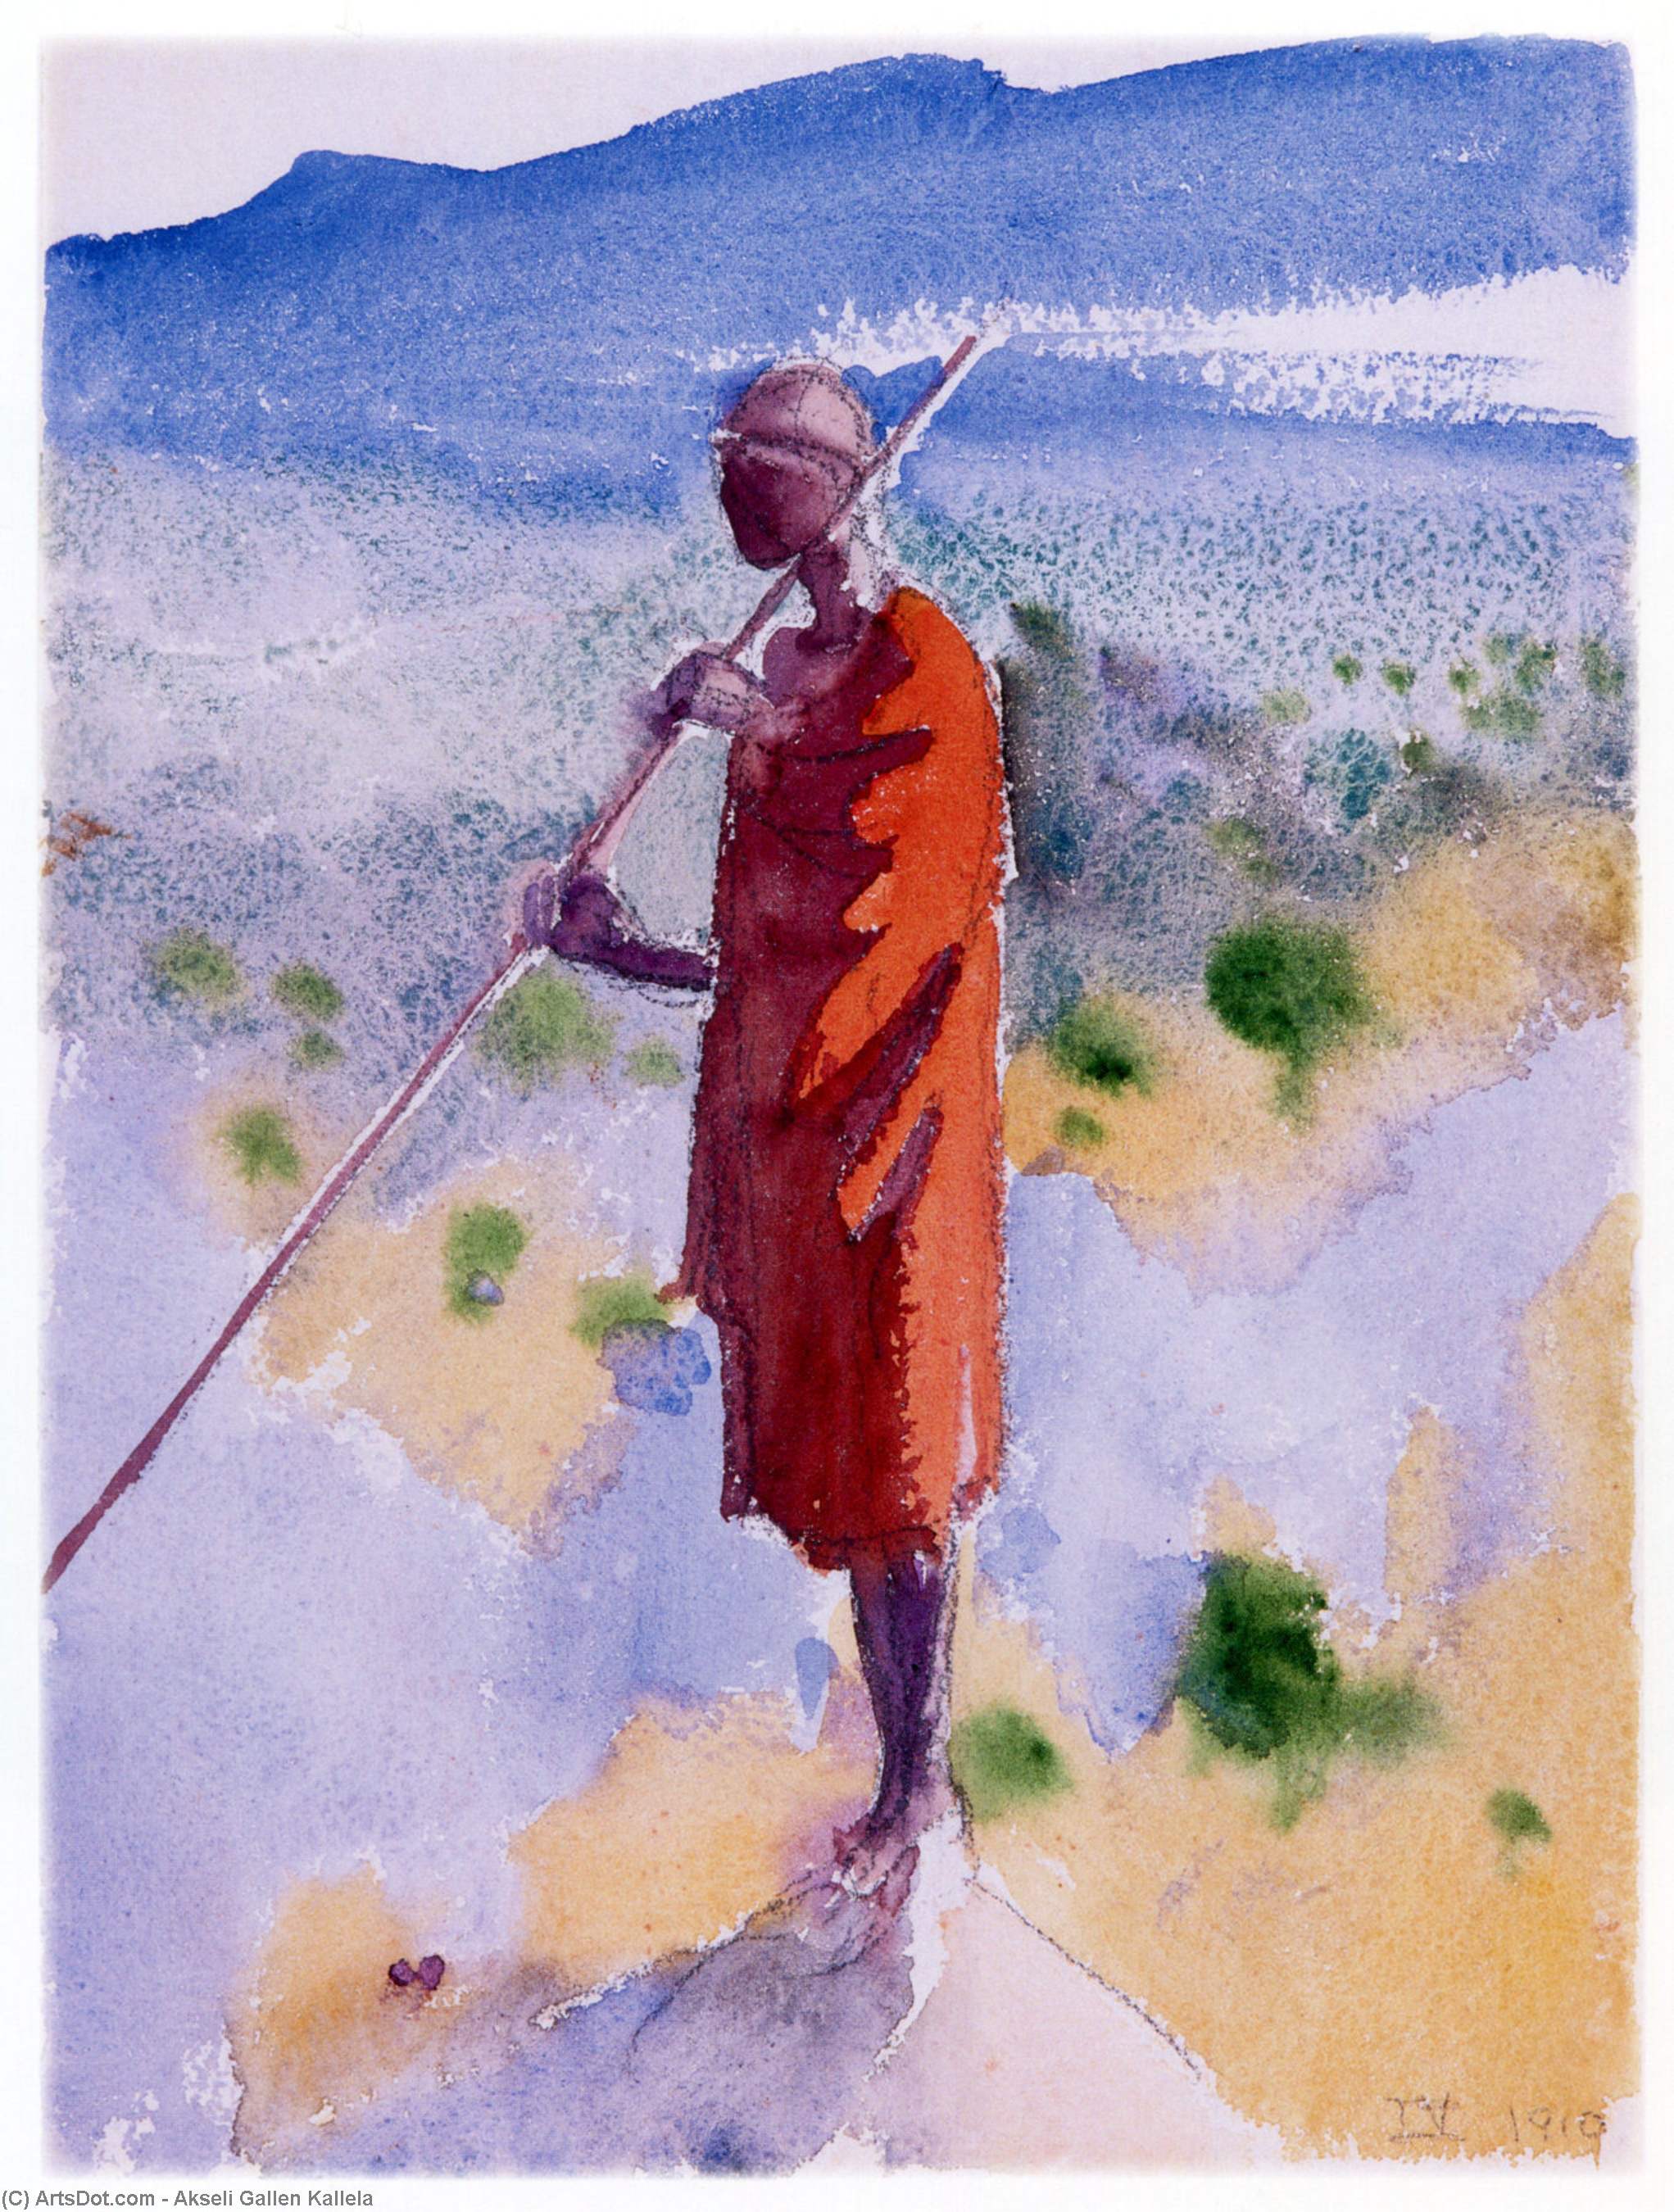 Wikioo.org - The Encyclopedia of Fine Arts - Painting, Artwork by Akseli Gallen Kallela - Kikuyu in a Red Cloak